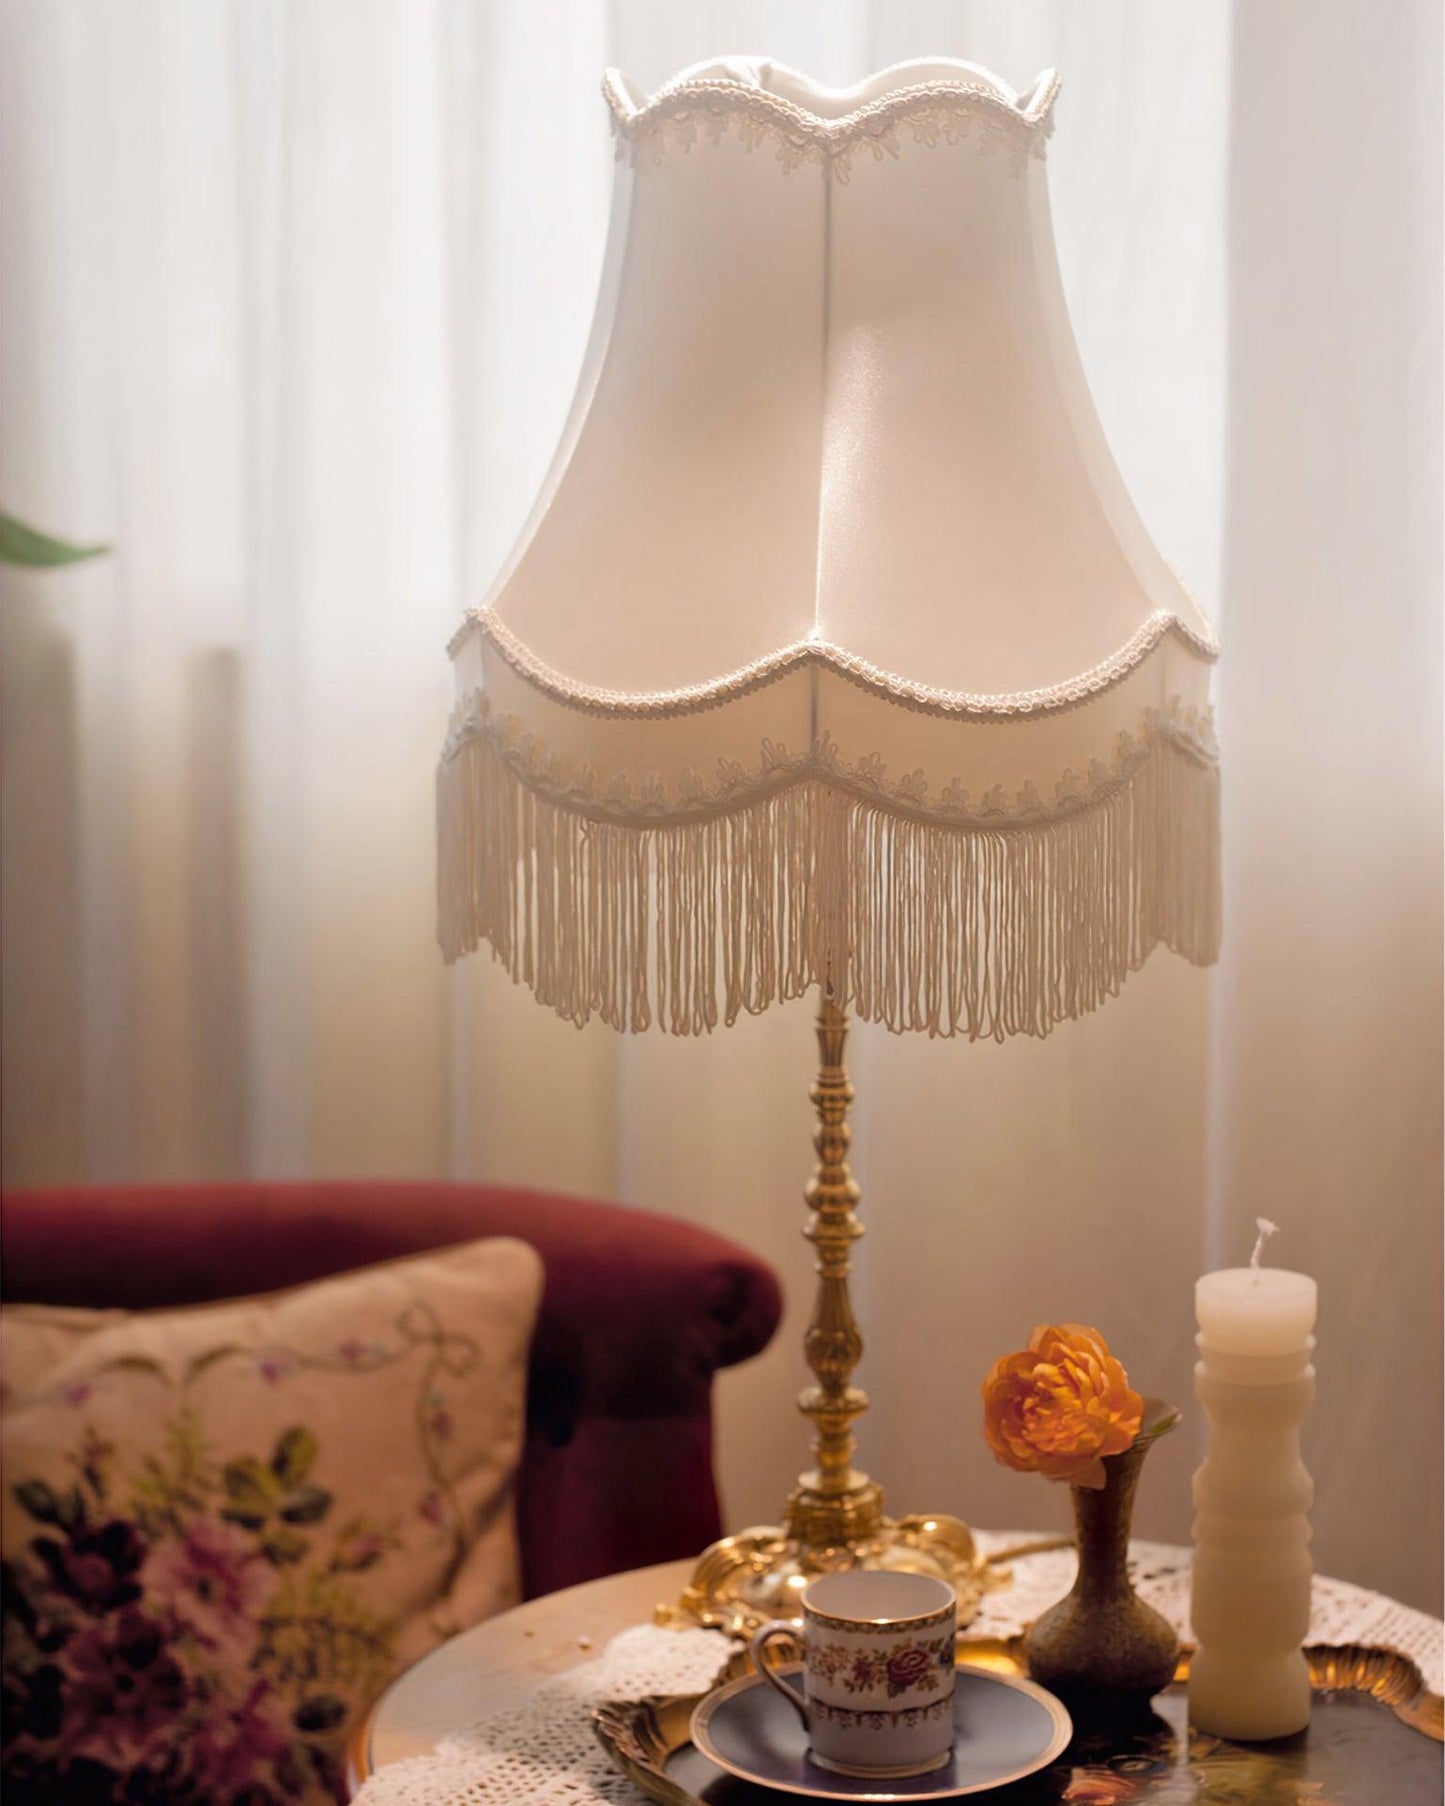 Pantalla Table Lamp